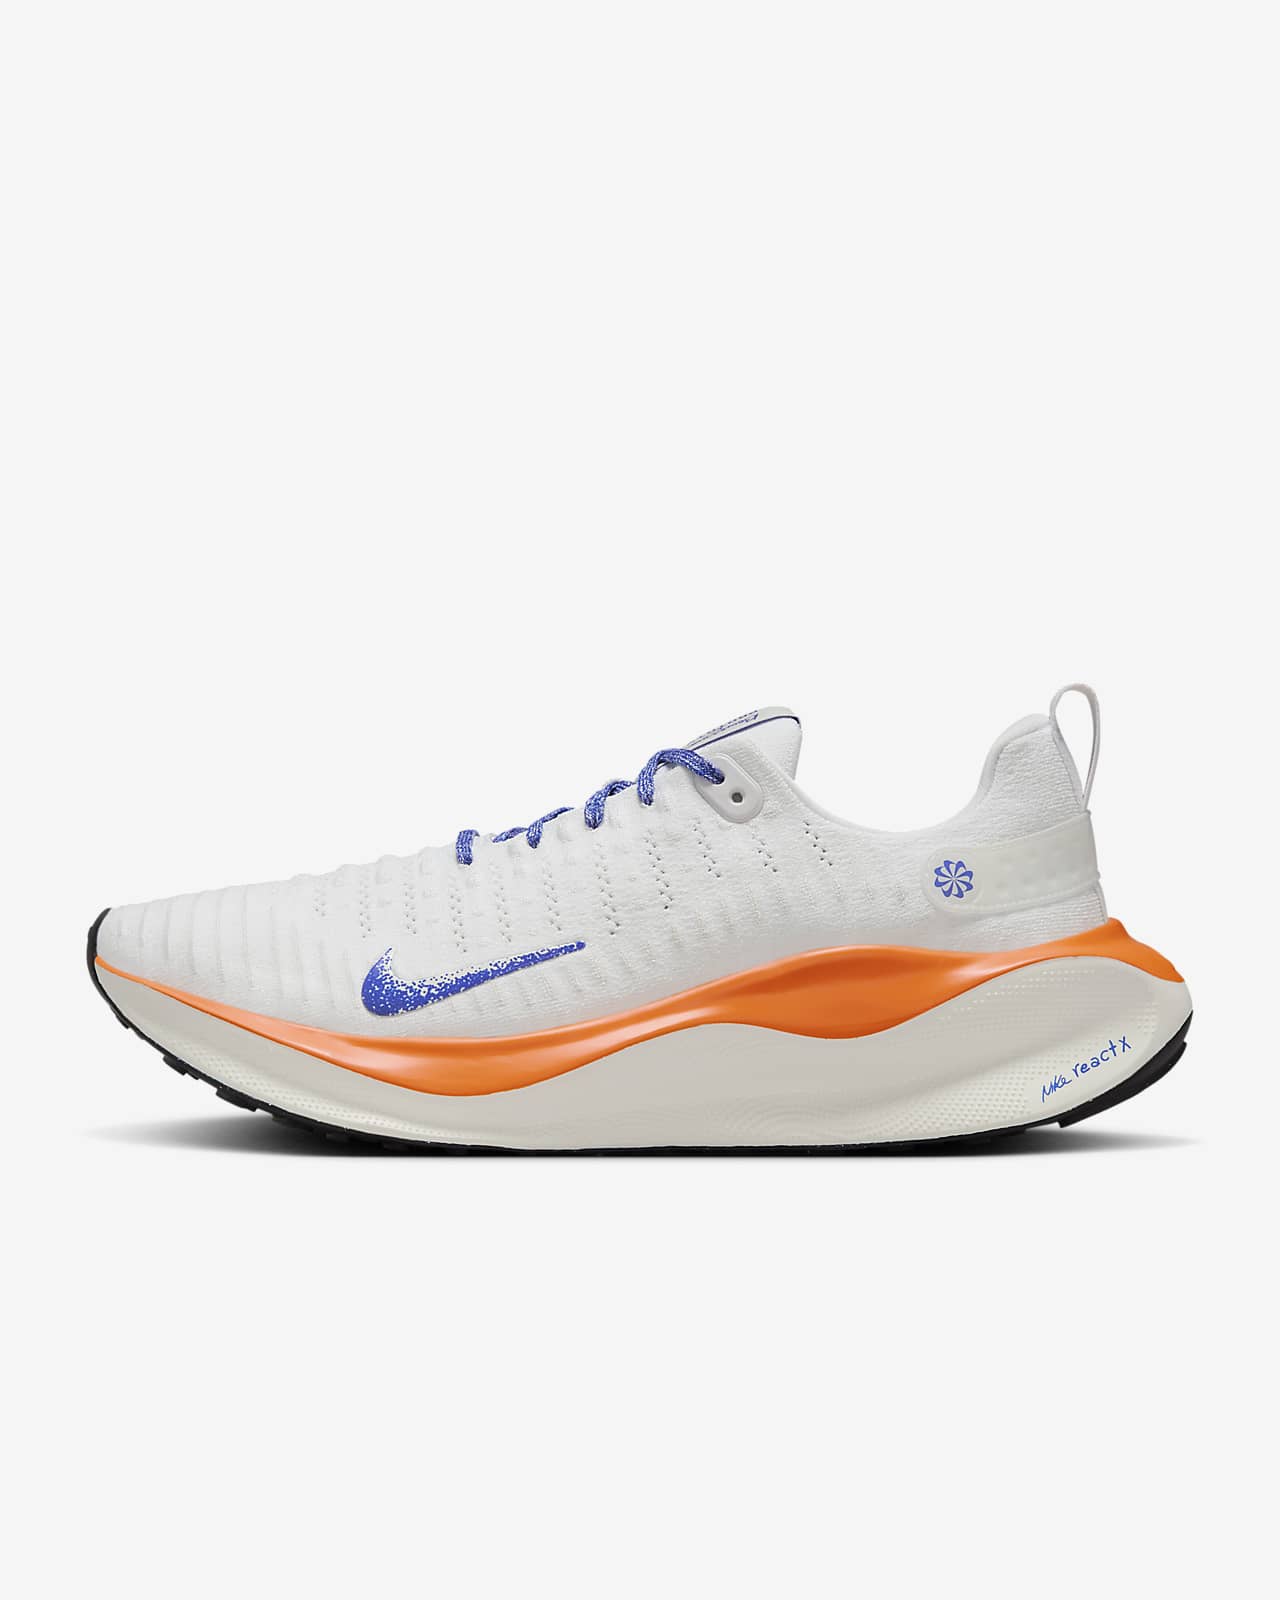 Ανδρικά παπούτσια για τρέξιμο σε δρόμο Nike InfinityRN 4 Blueprint